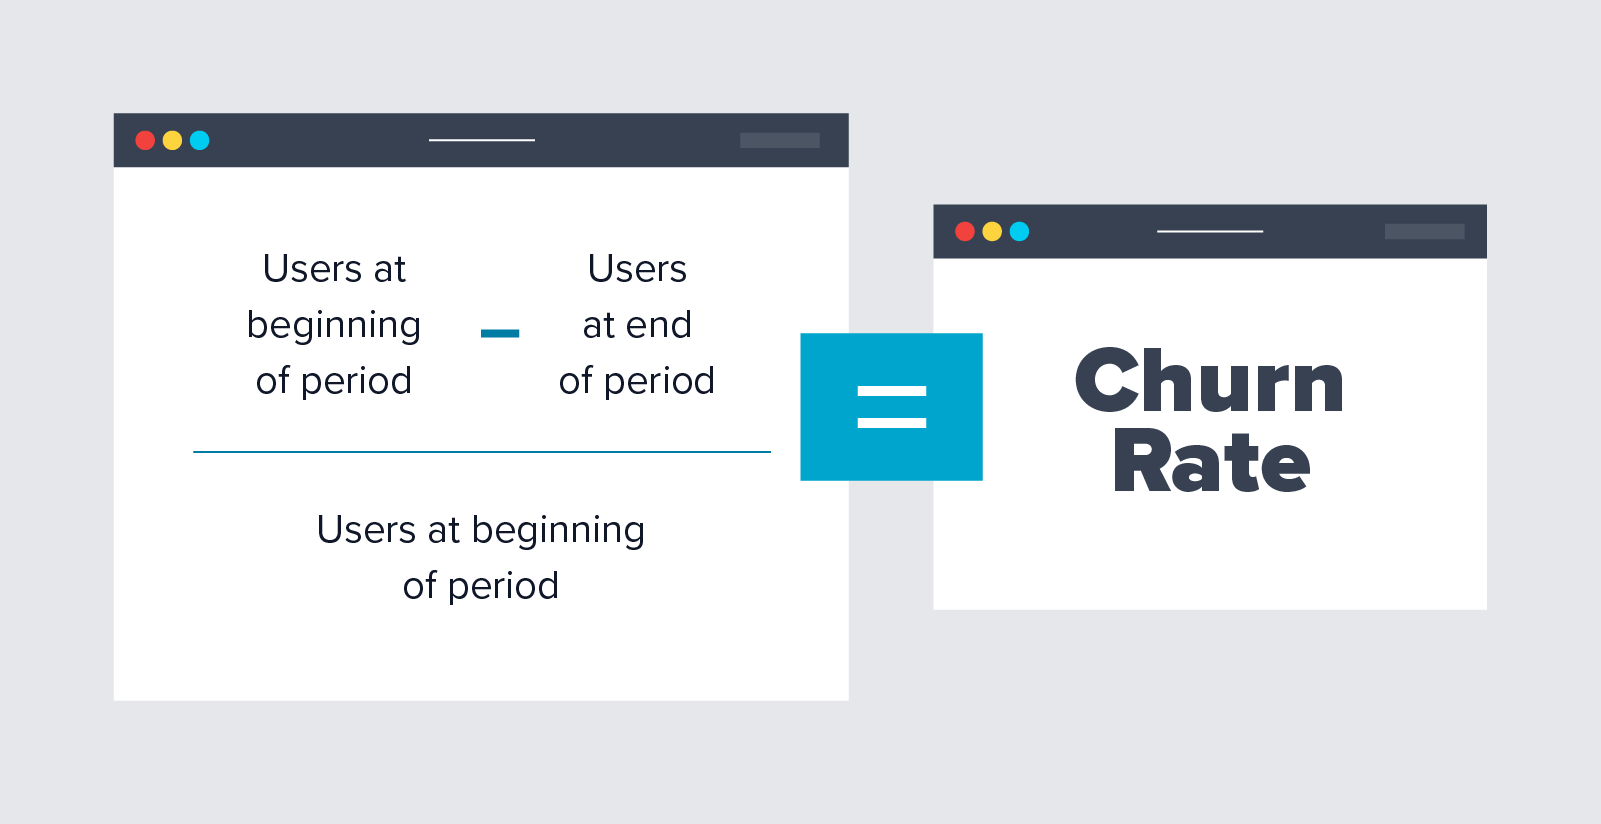 Cara menghitung churn rate: pengguna di awal periode dikurangi pengguna di akhir periode, dibagi pengguna di awal periode